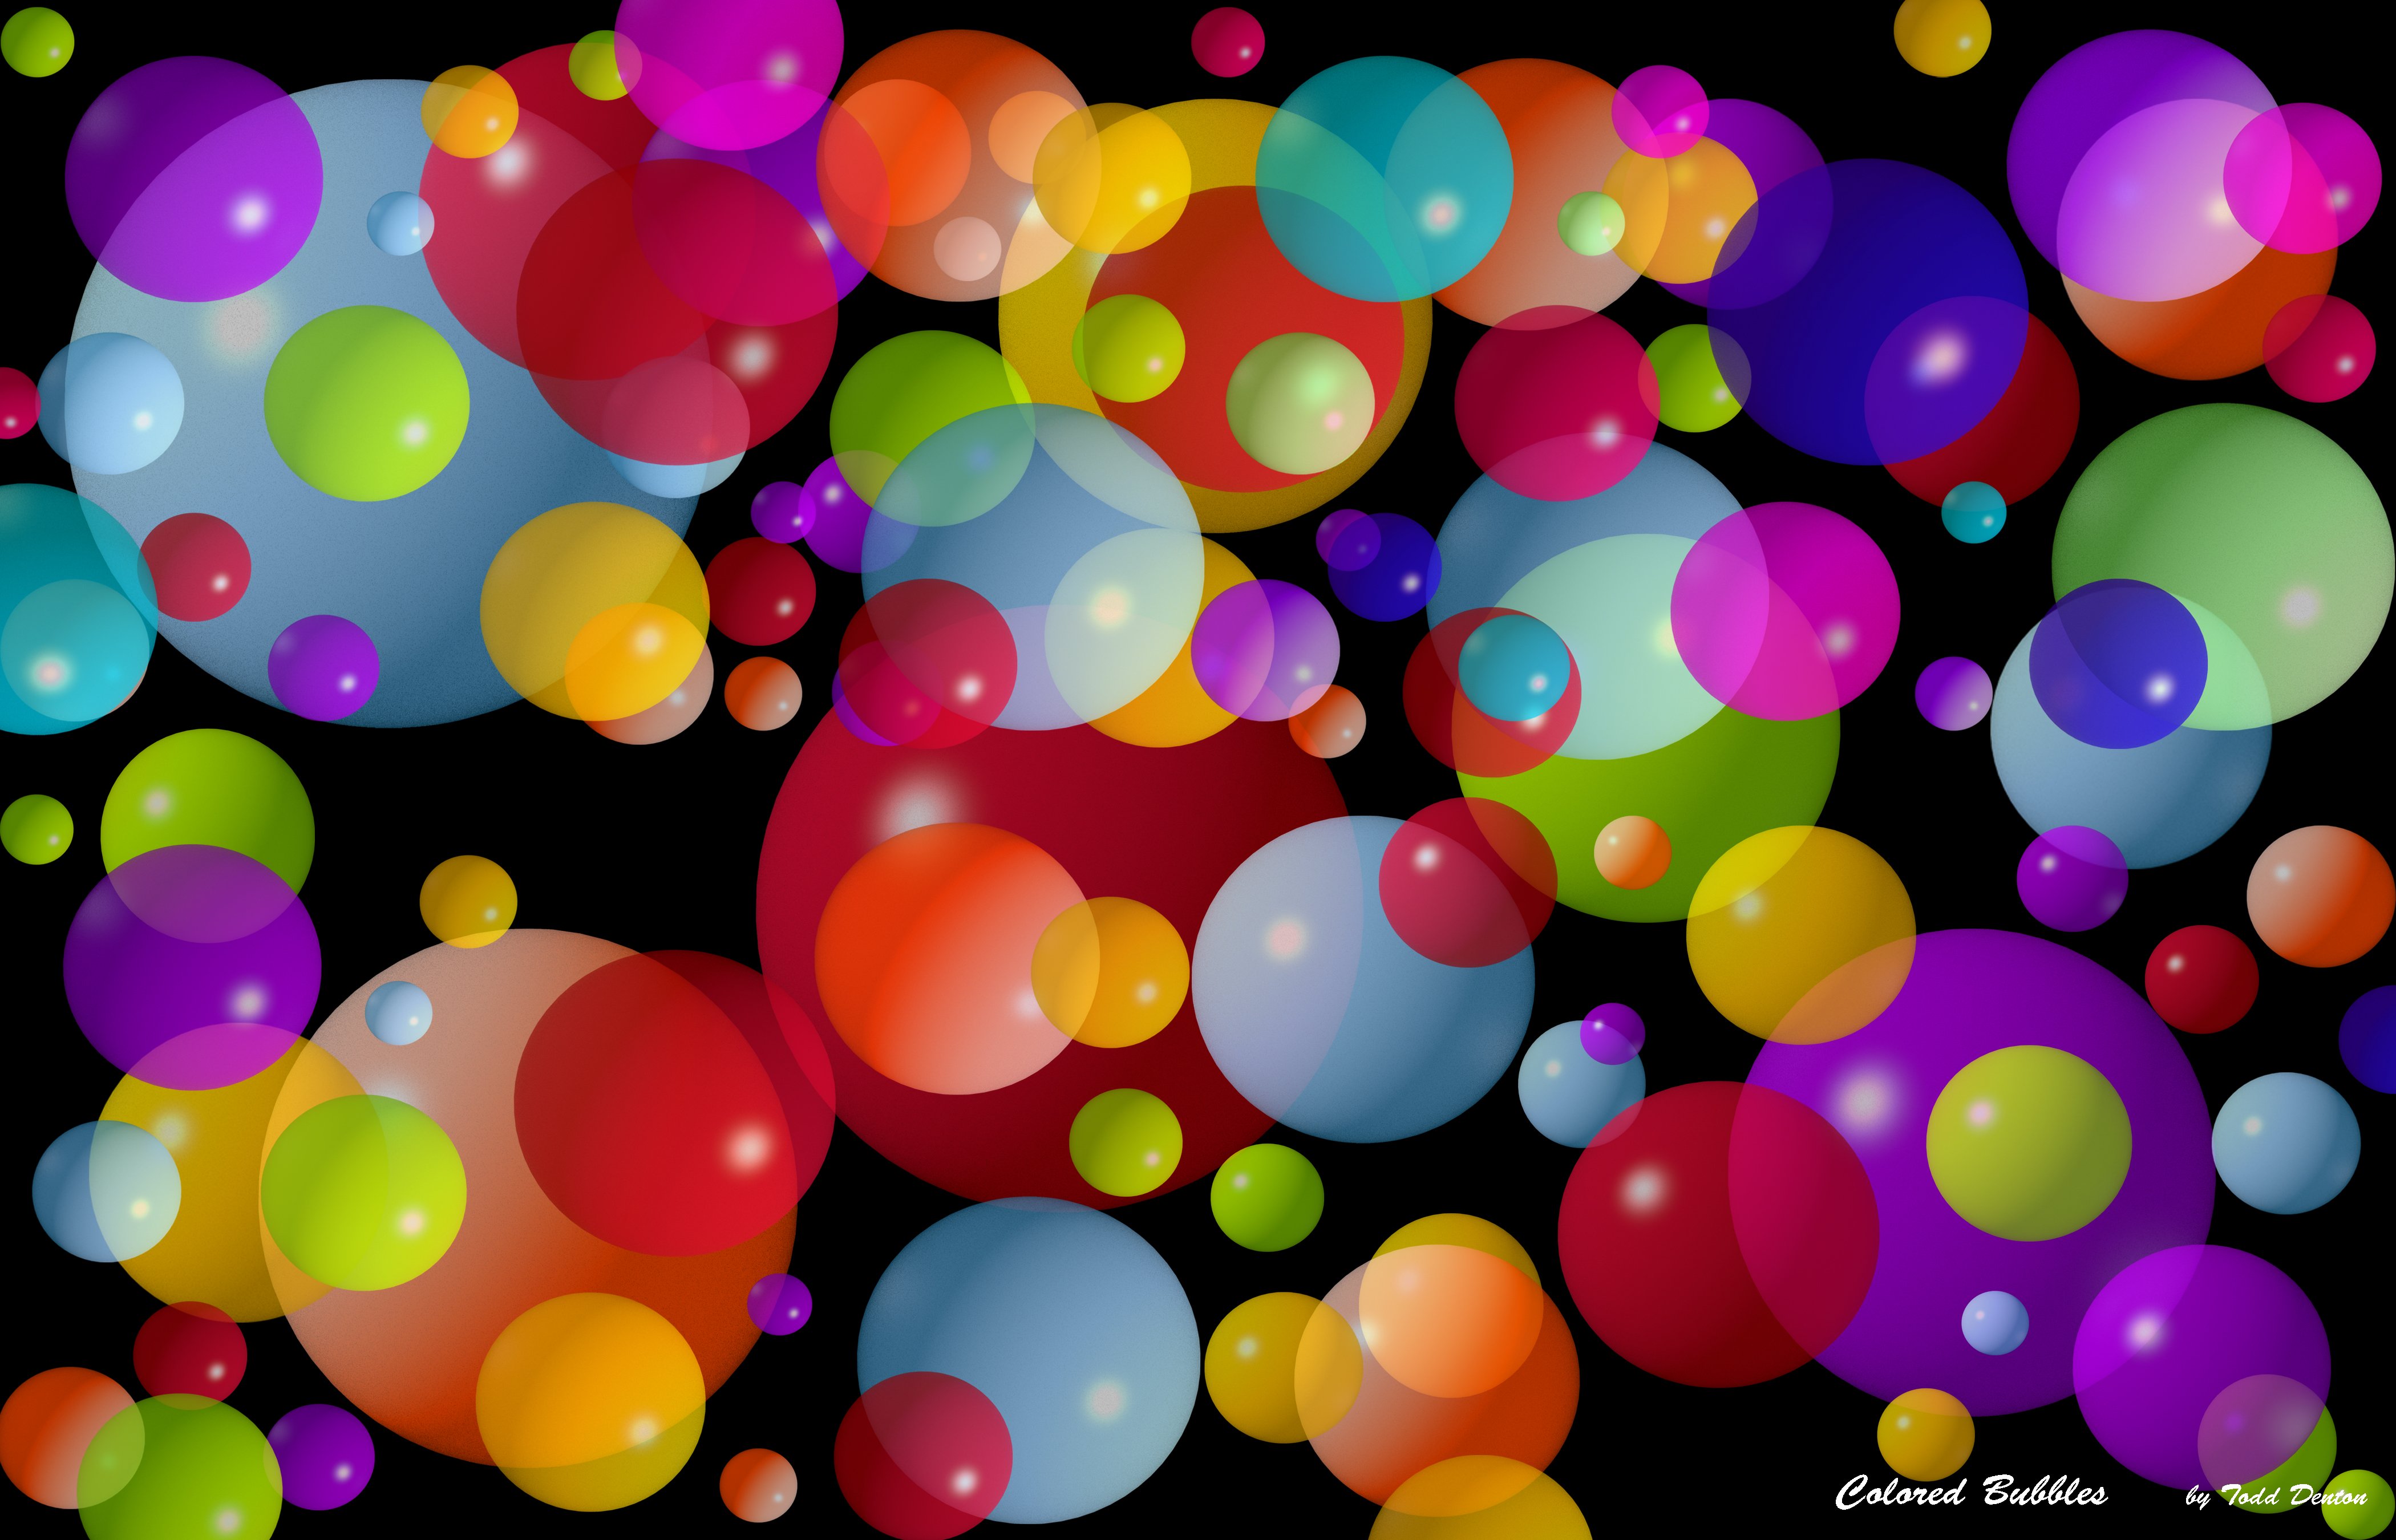 Colored Bubbles wallpaper   ForWallpapercom